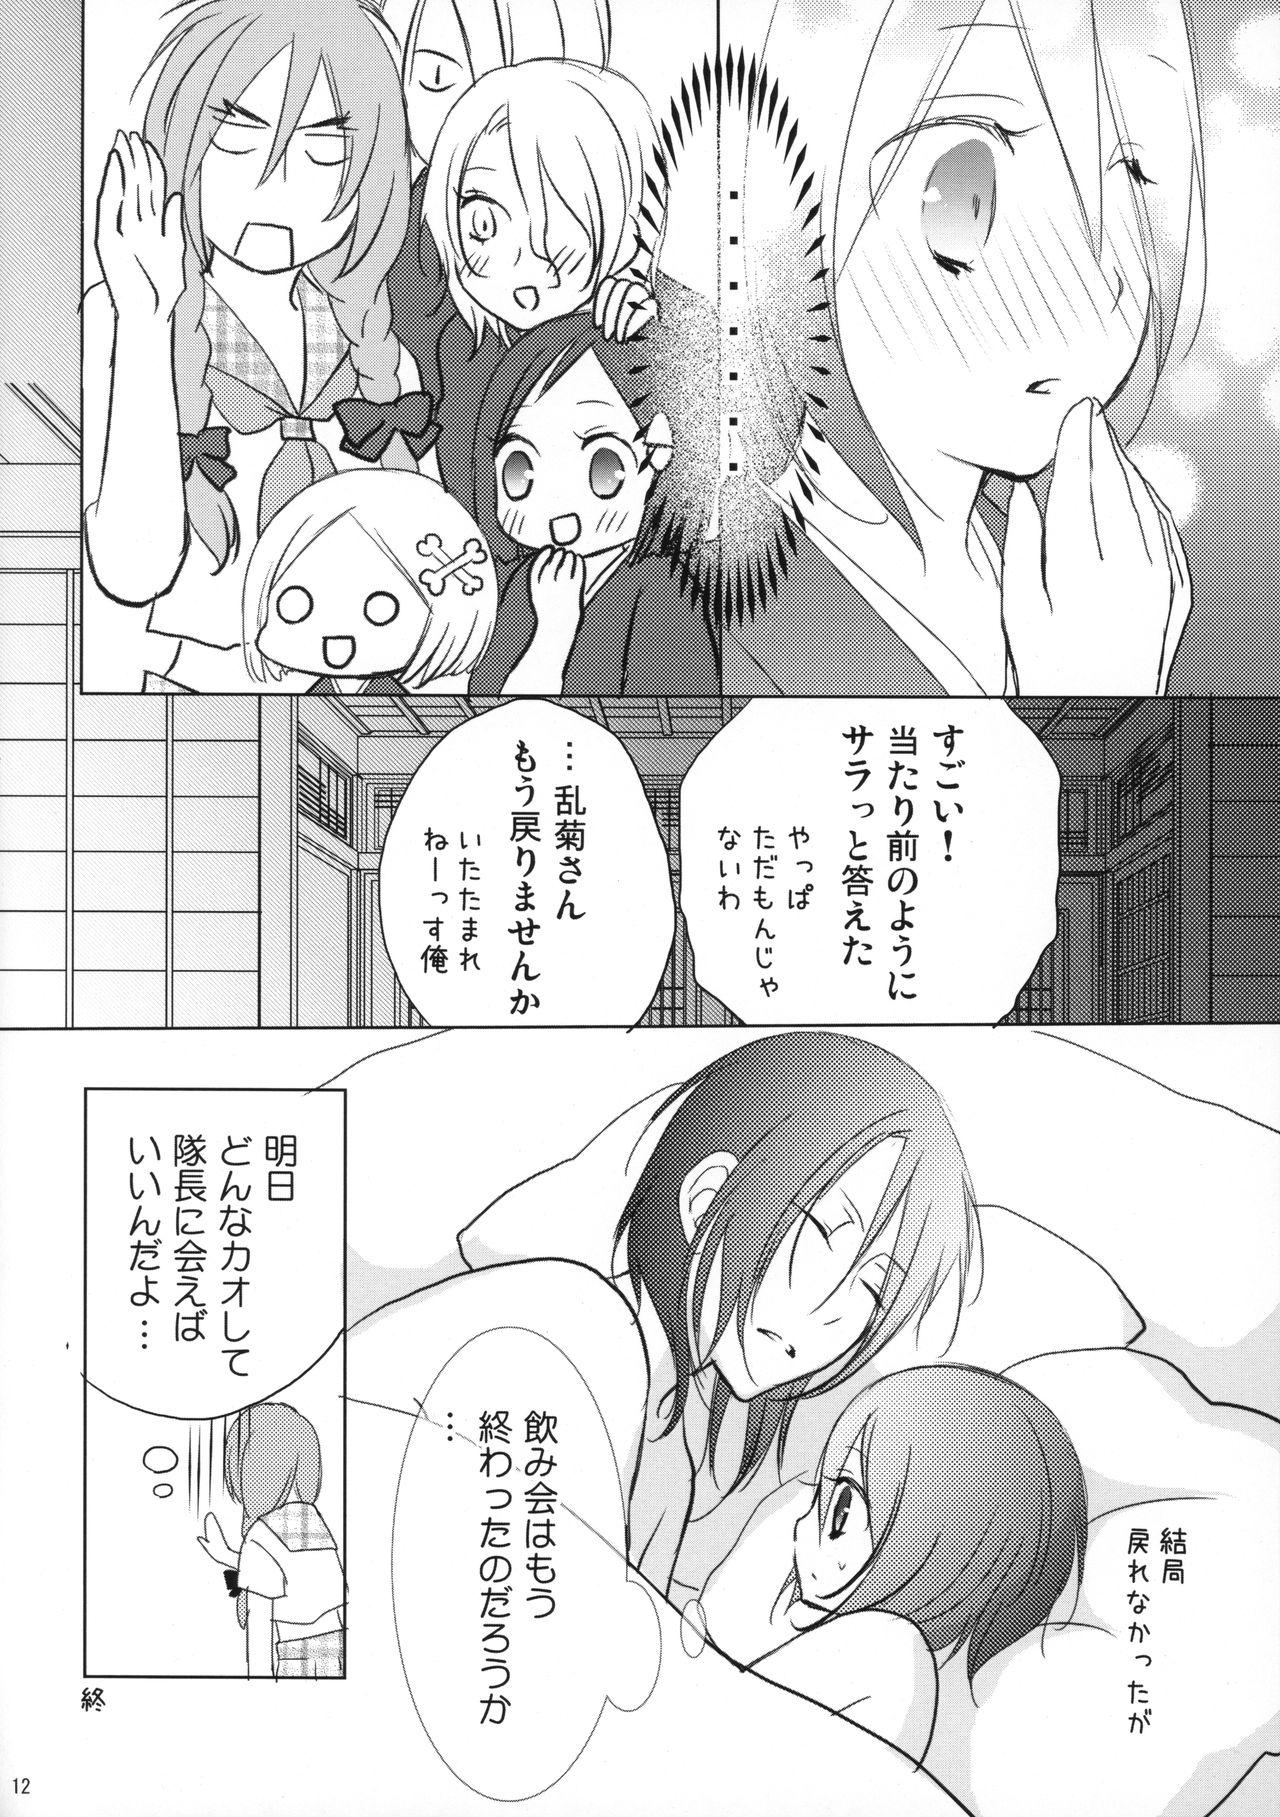 Caught (C82) [DewDrop (Sakurai)] Tsukishima-san in Kuchiki-ke (Bleach) - Bleach Money - Page 11